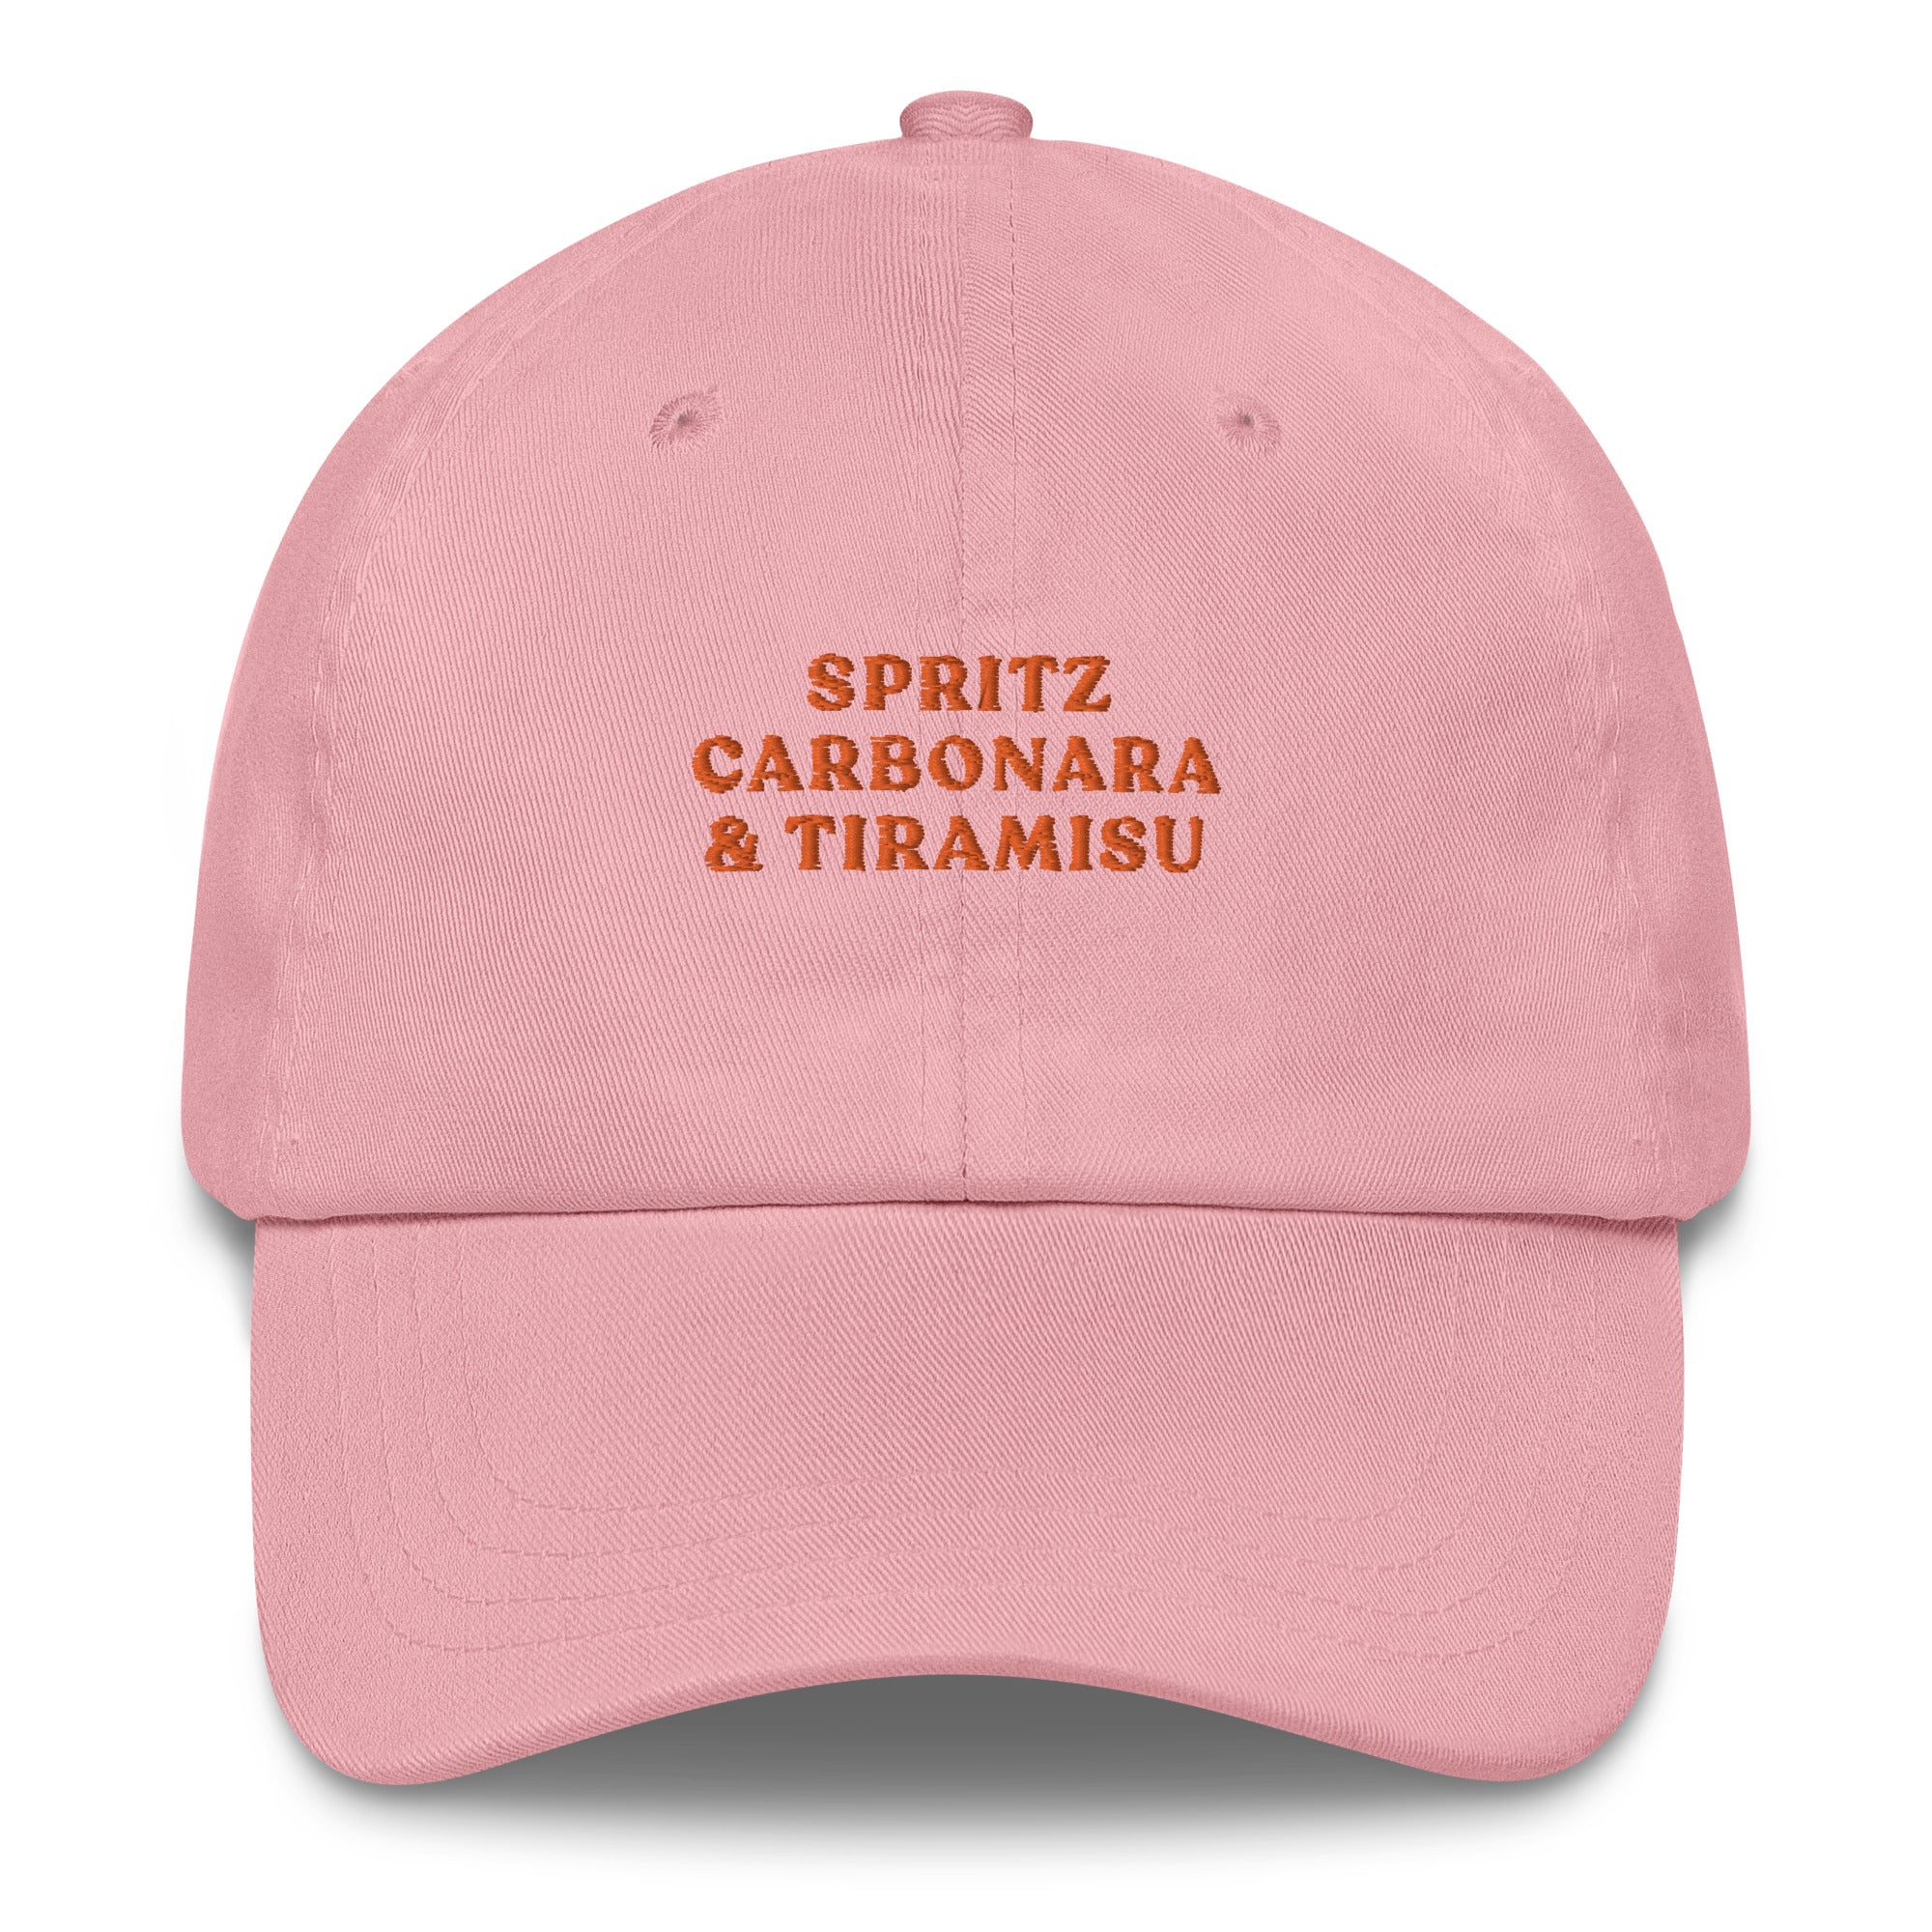 Spritz Carbonara & Tiramisu - Cap